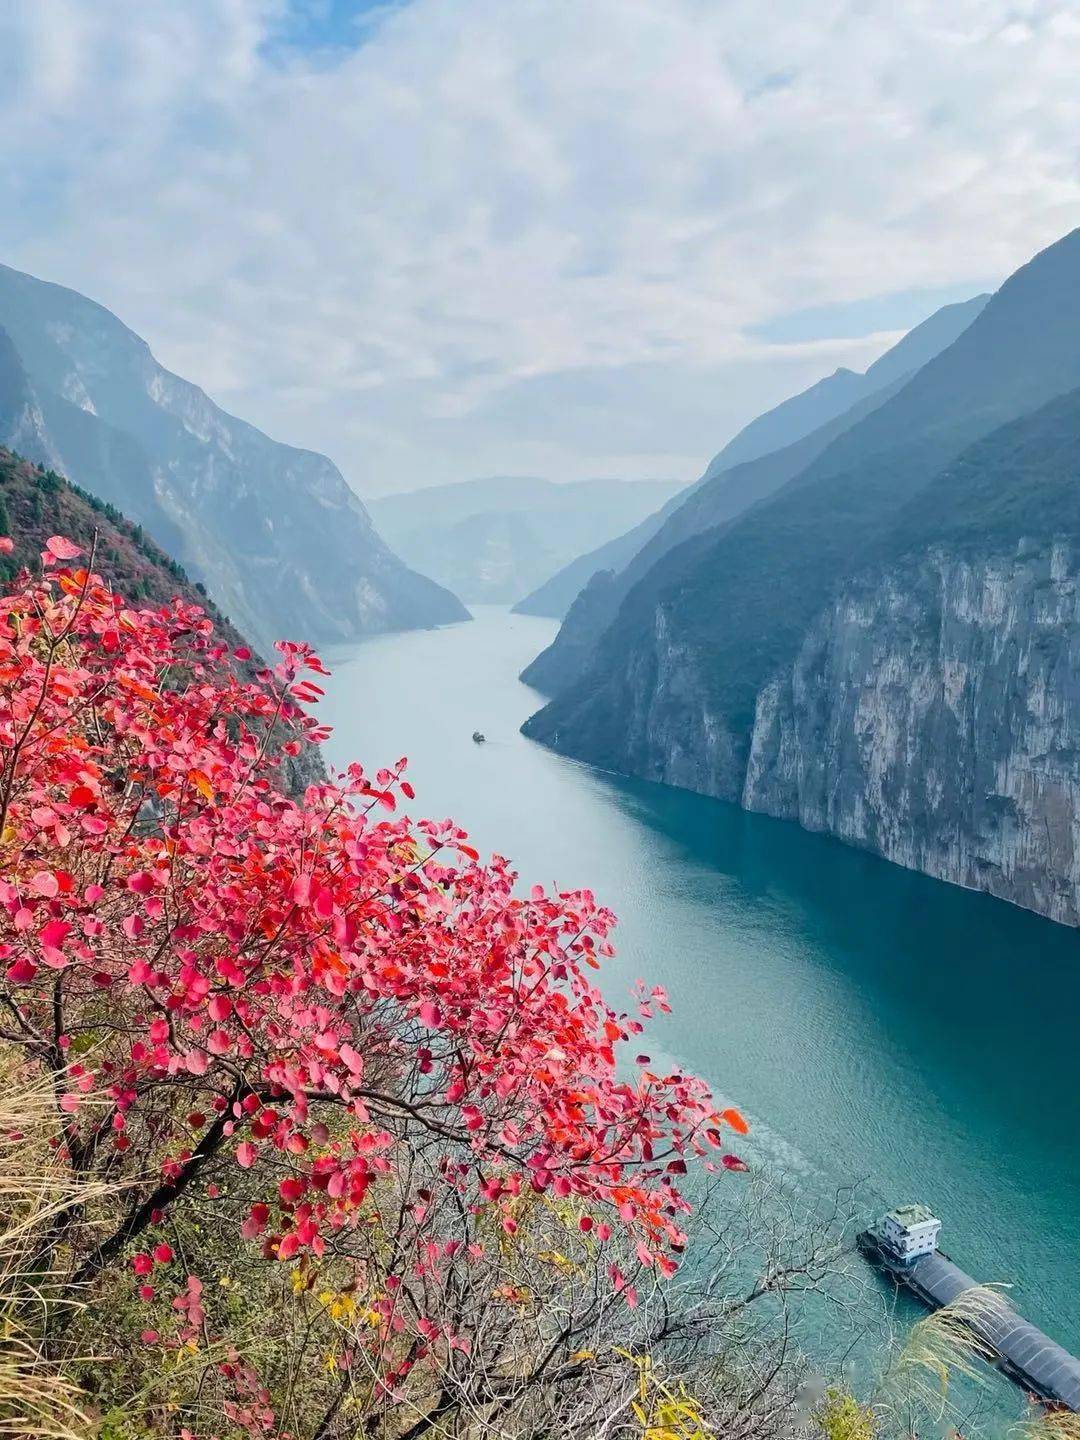 (已成行)长江三峡6日经典徒步:2021年11月06日